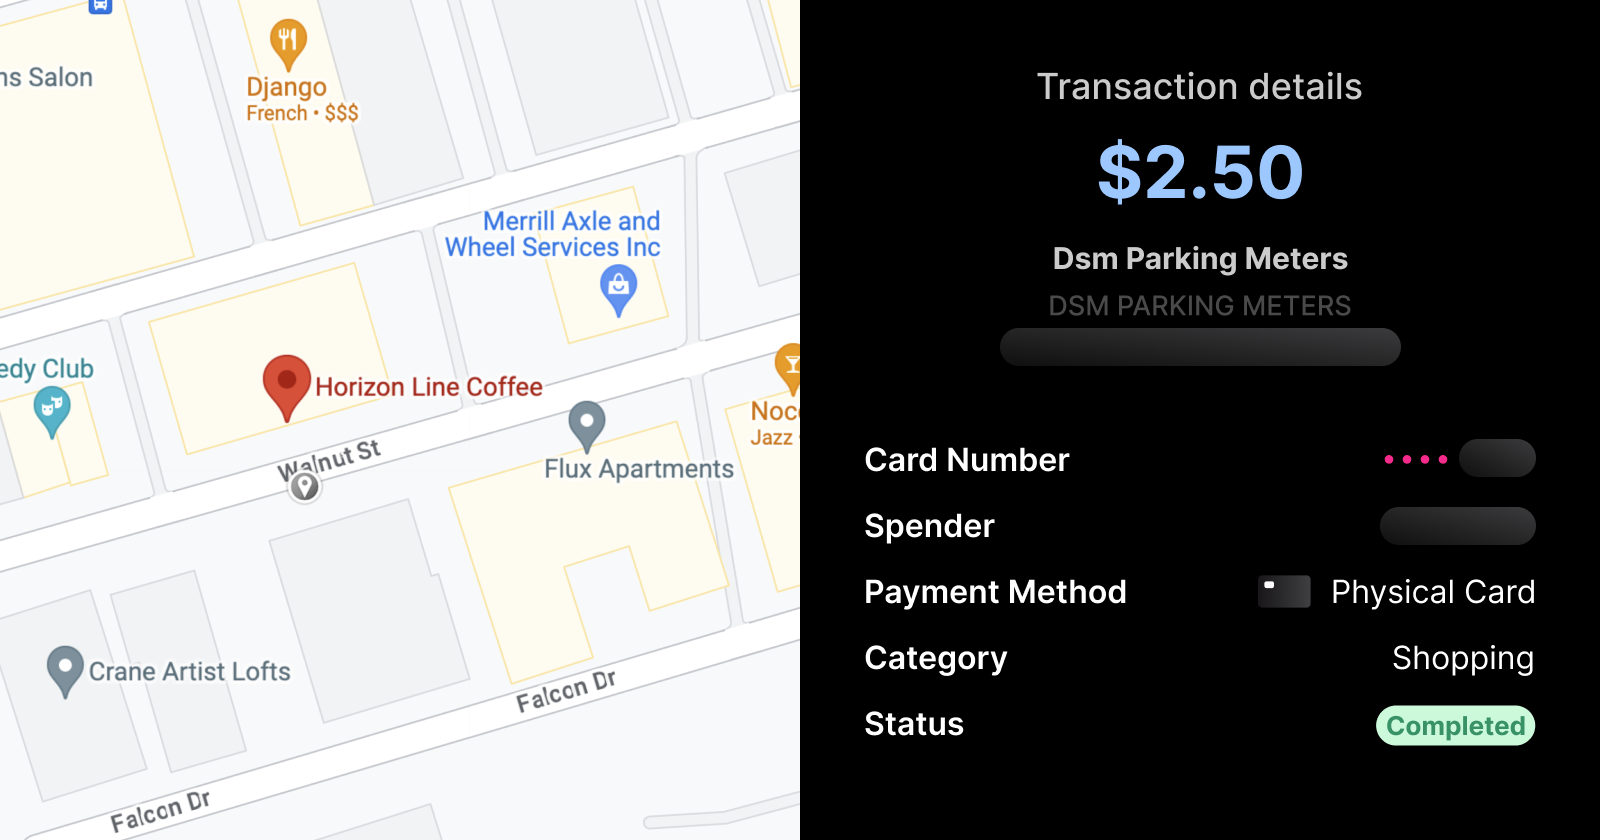 Rain Transaction Details UI for downtown Des Moines parking meter transaction | Brale